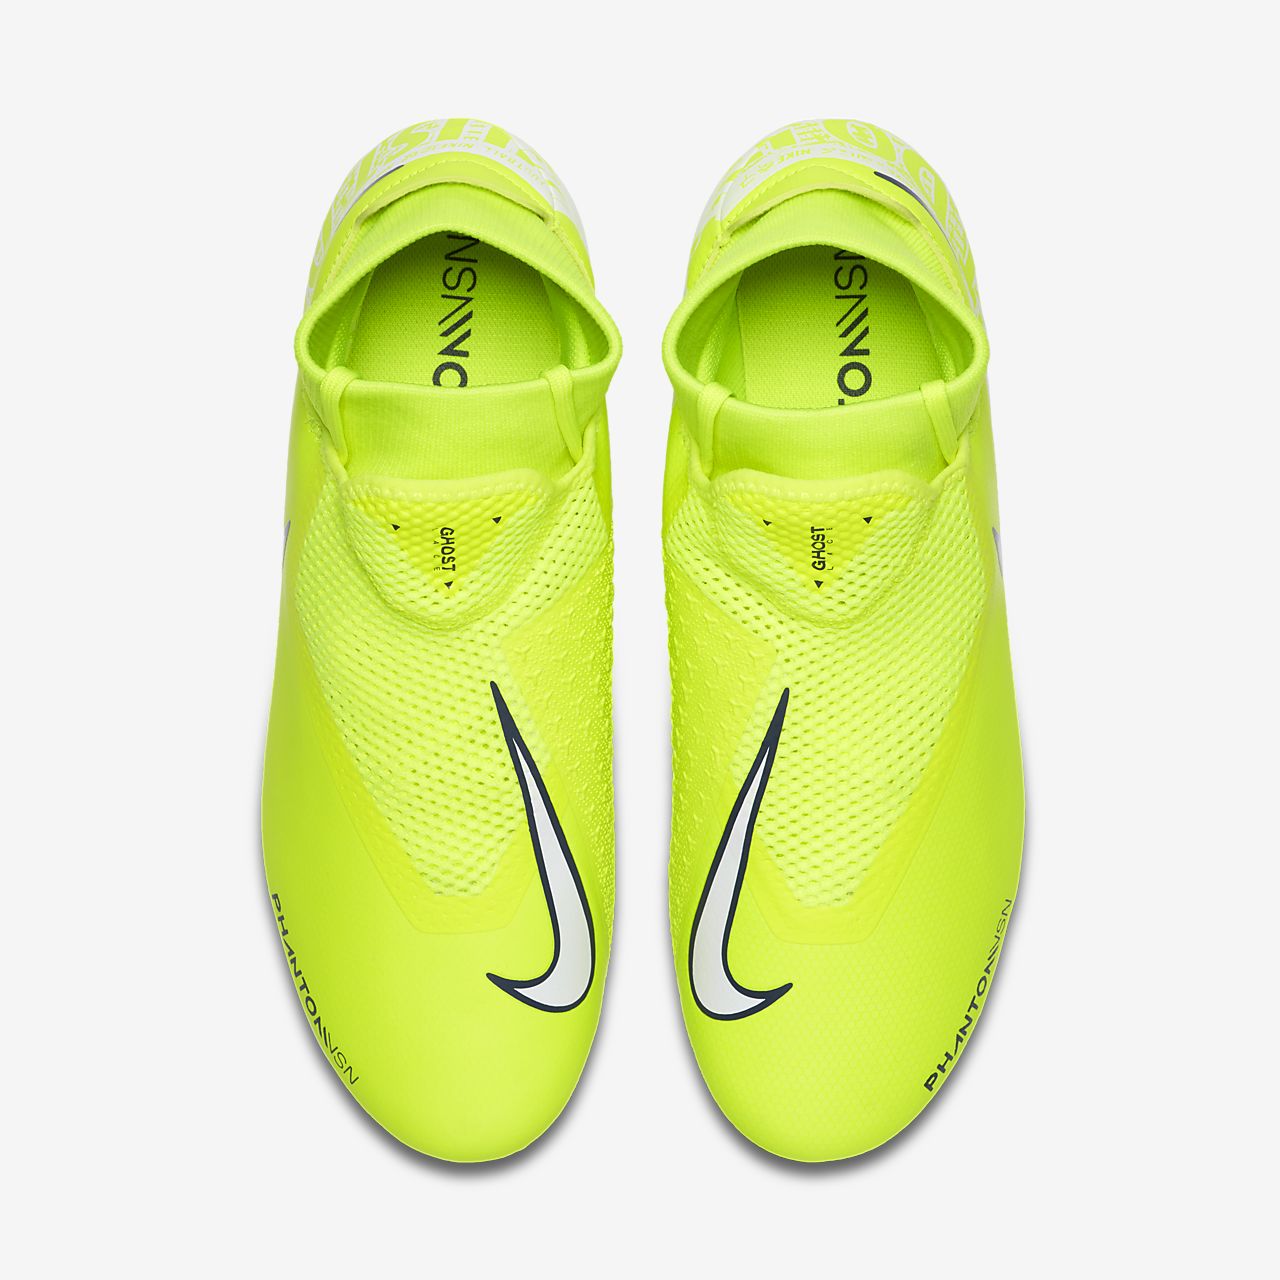 Nike Phantom VSN soccer cleats size 6Y in 2020 Blue nike .